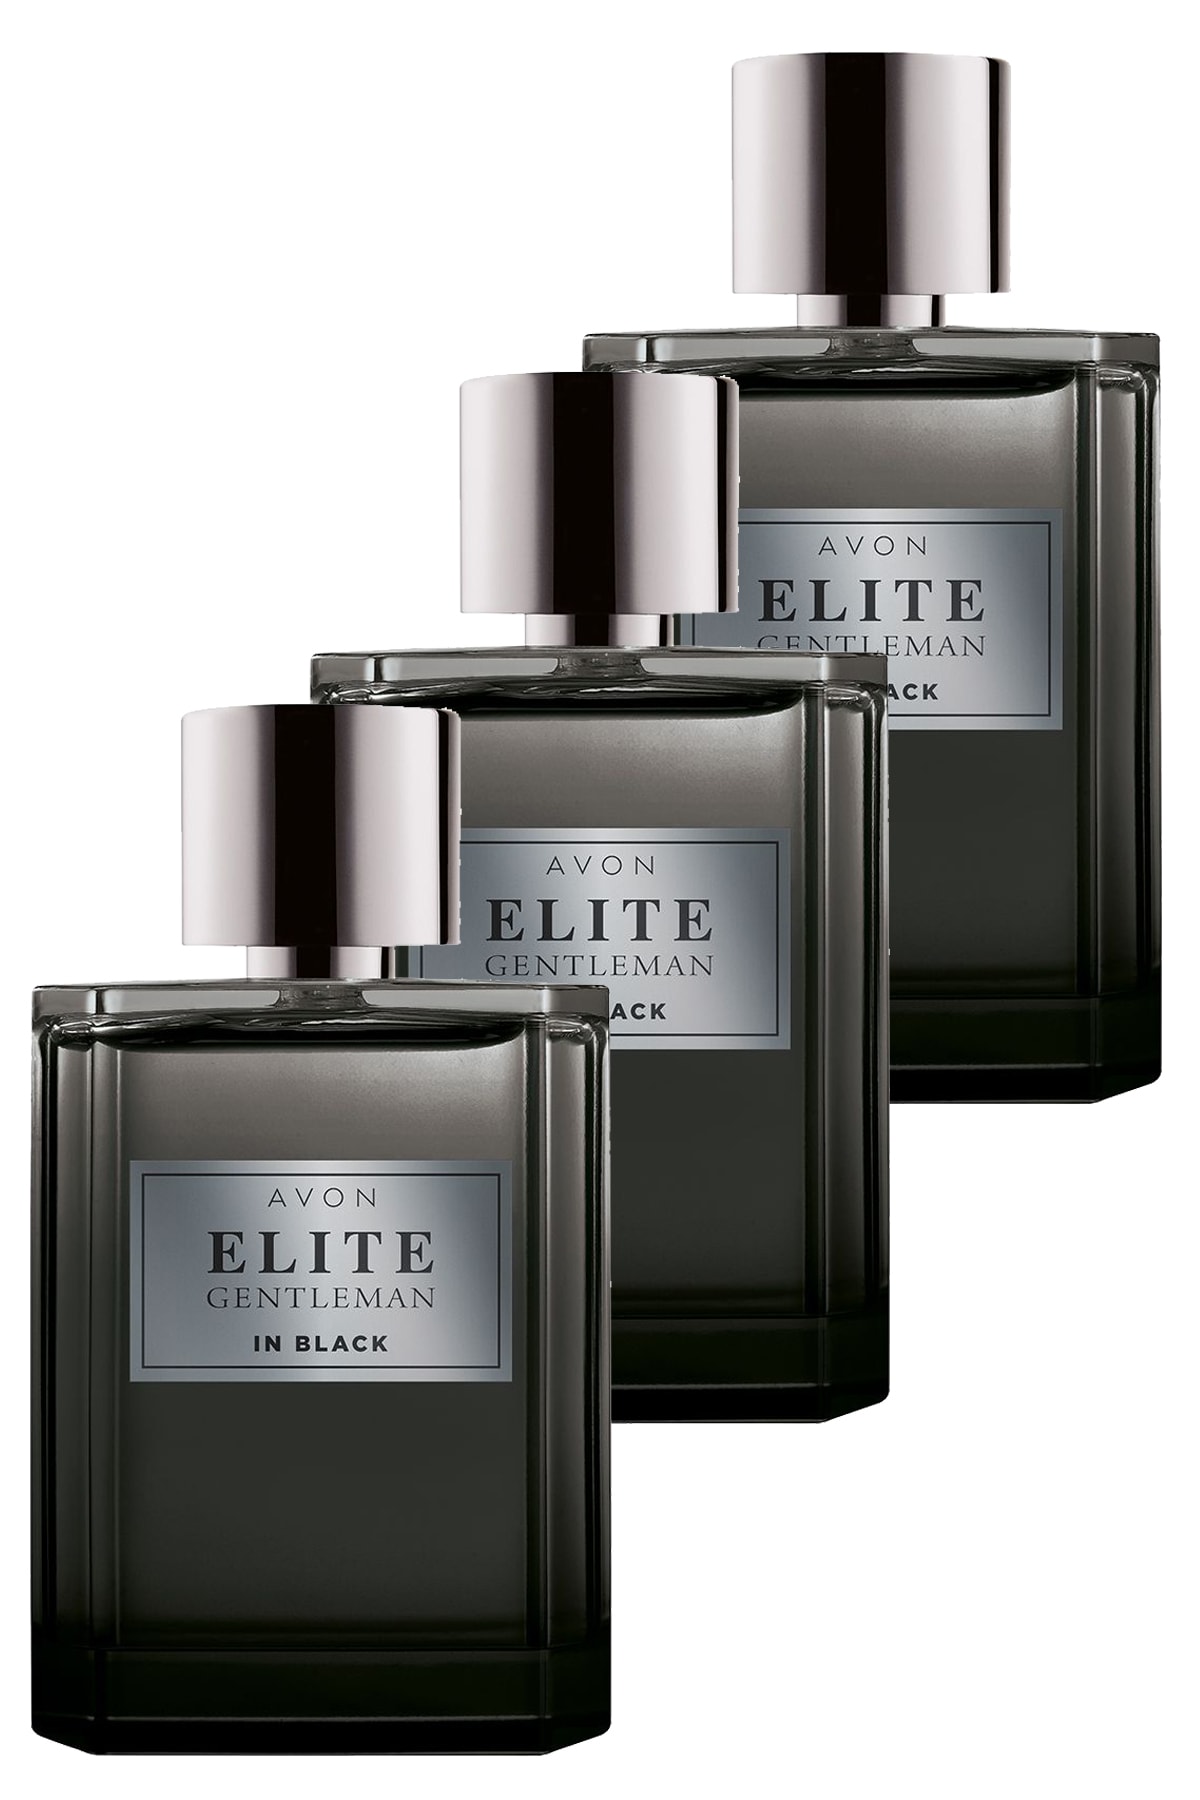 AVON Elite Gentleman in Black Erkek Parfüm Edt 75 ml 3'lü Set 5050000104340